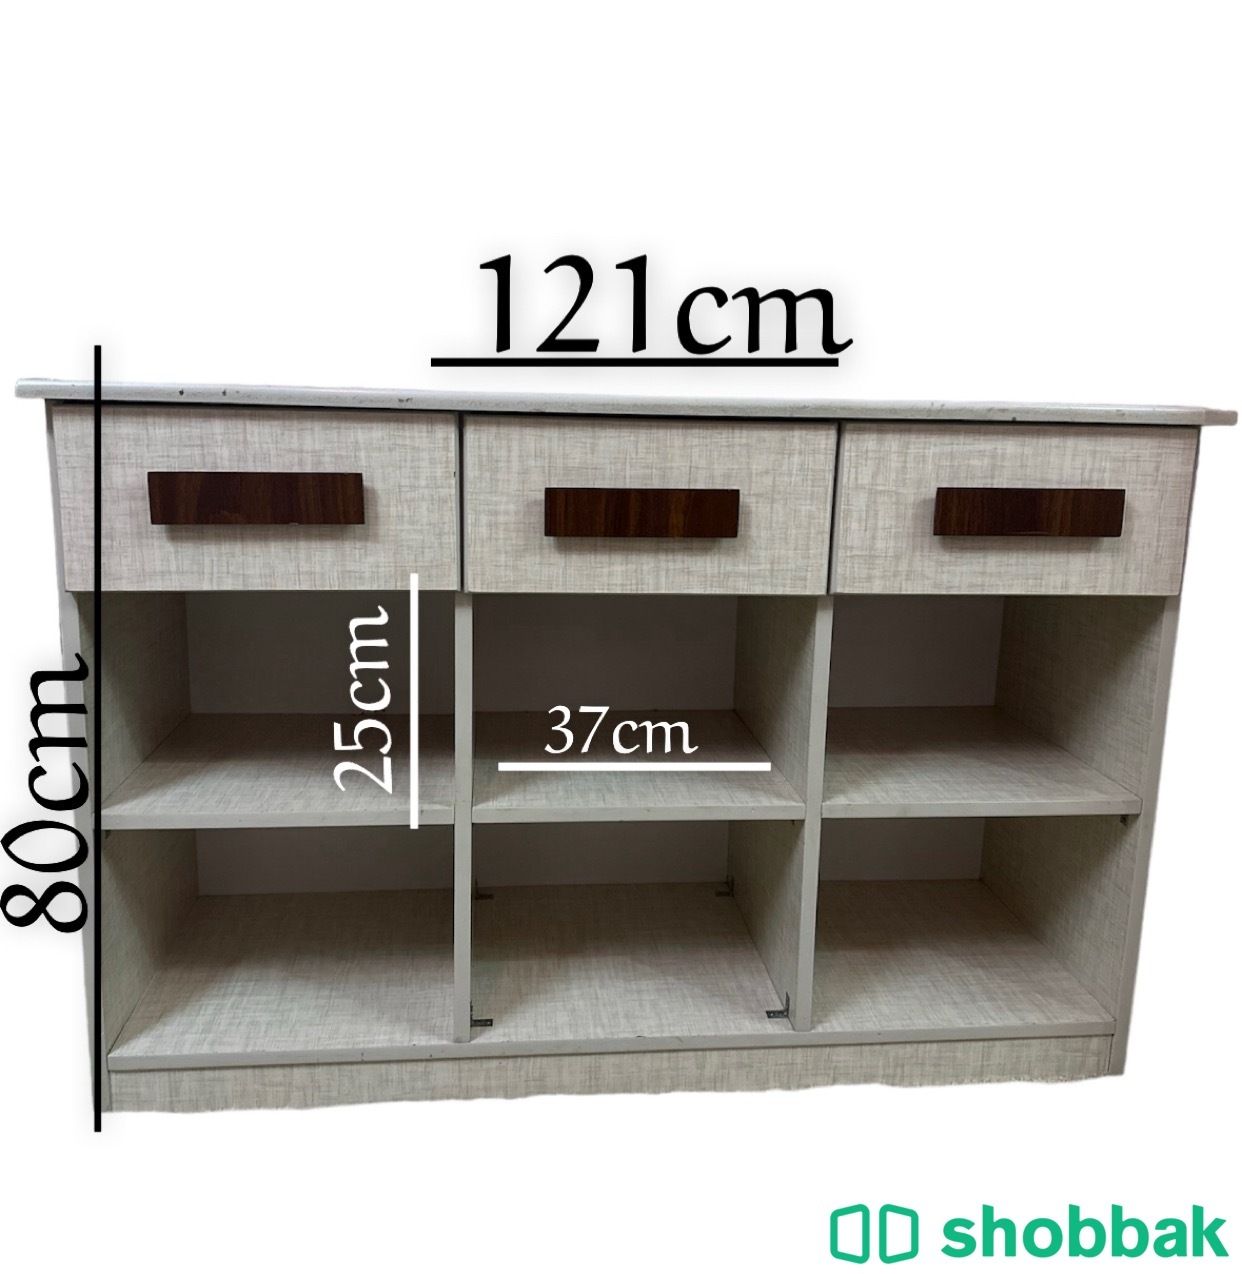 السرير نفر ونص مع ادراج بالحانب والمرتبة… Shobbak Saudi Arabia